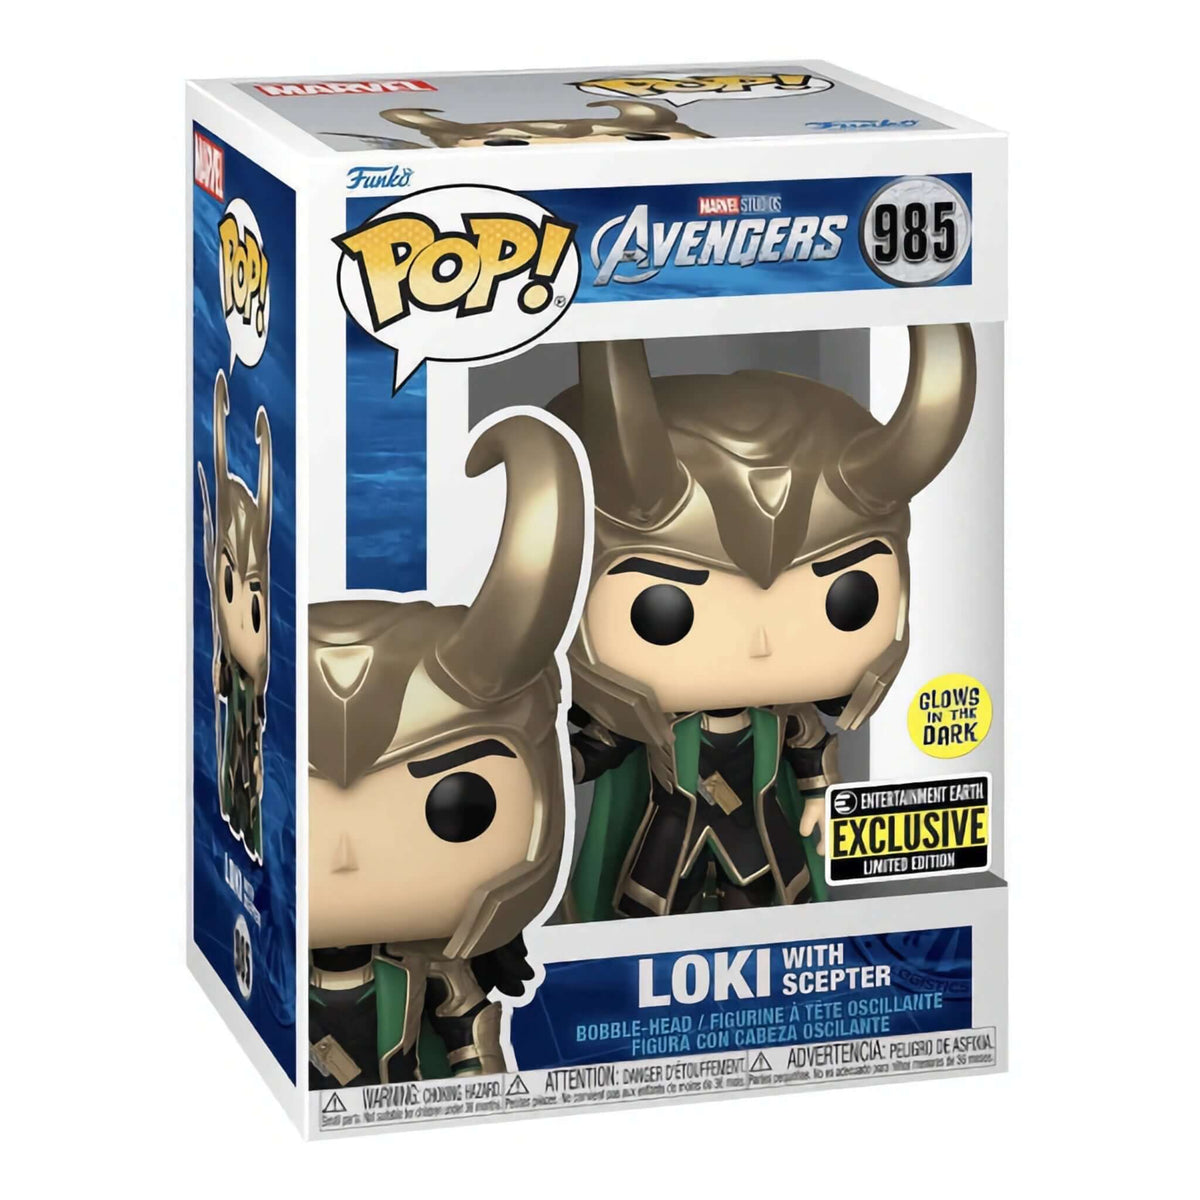 Loki with Scepter GITD Funko Pop Review 